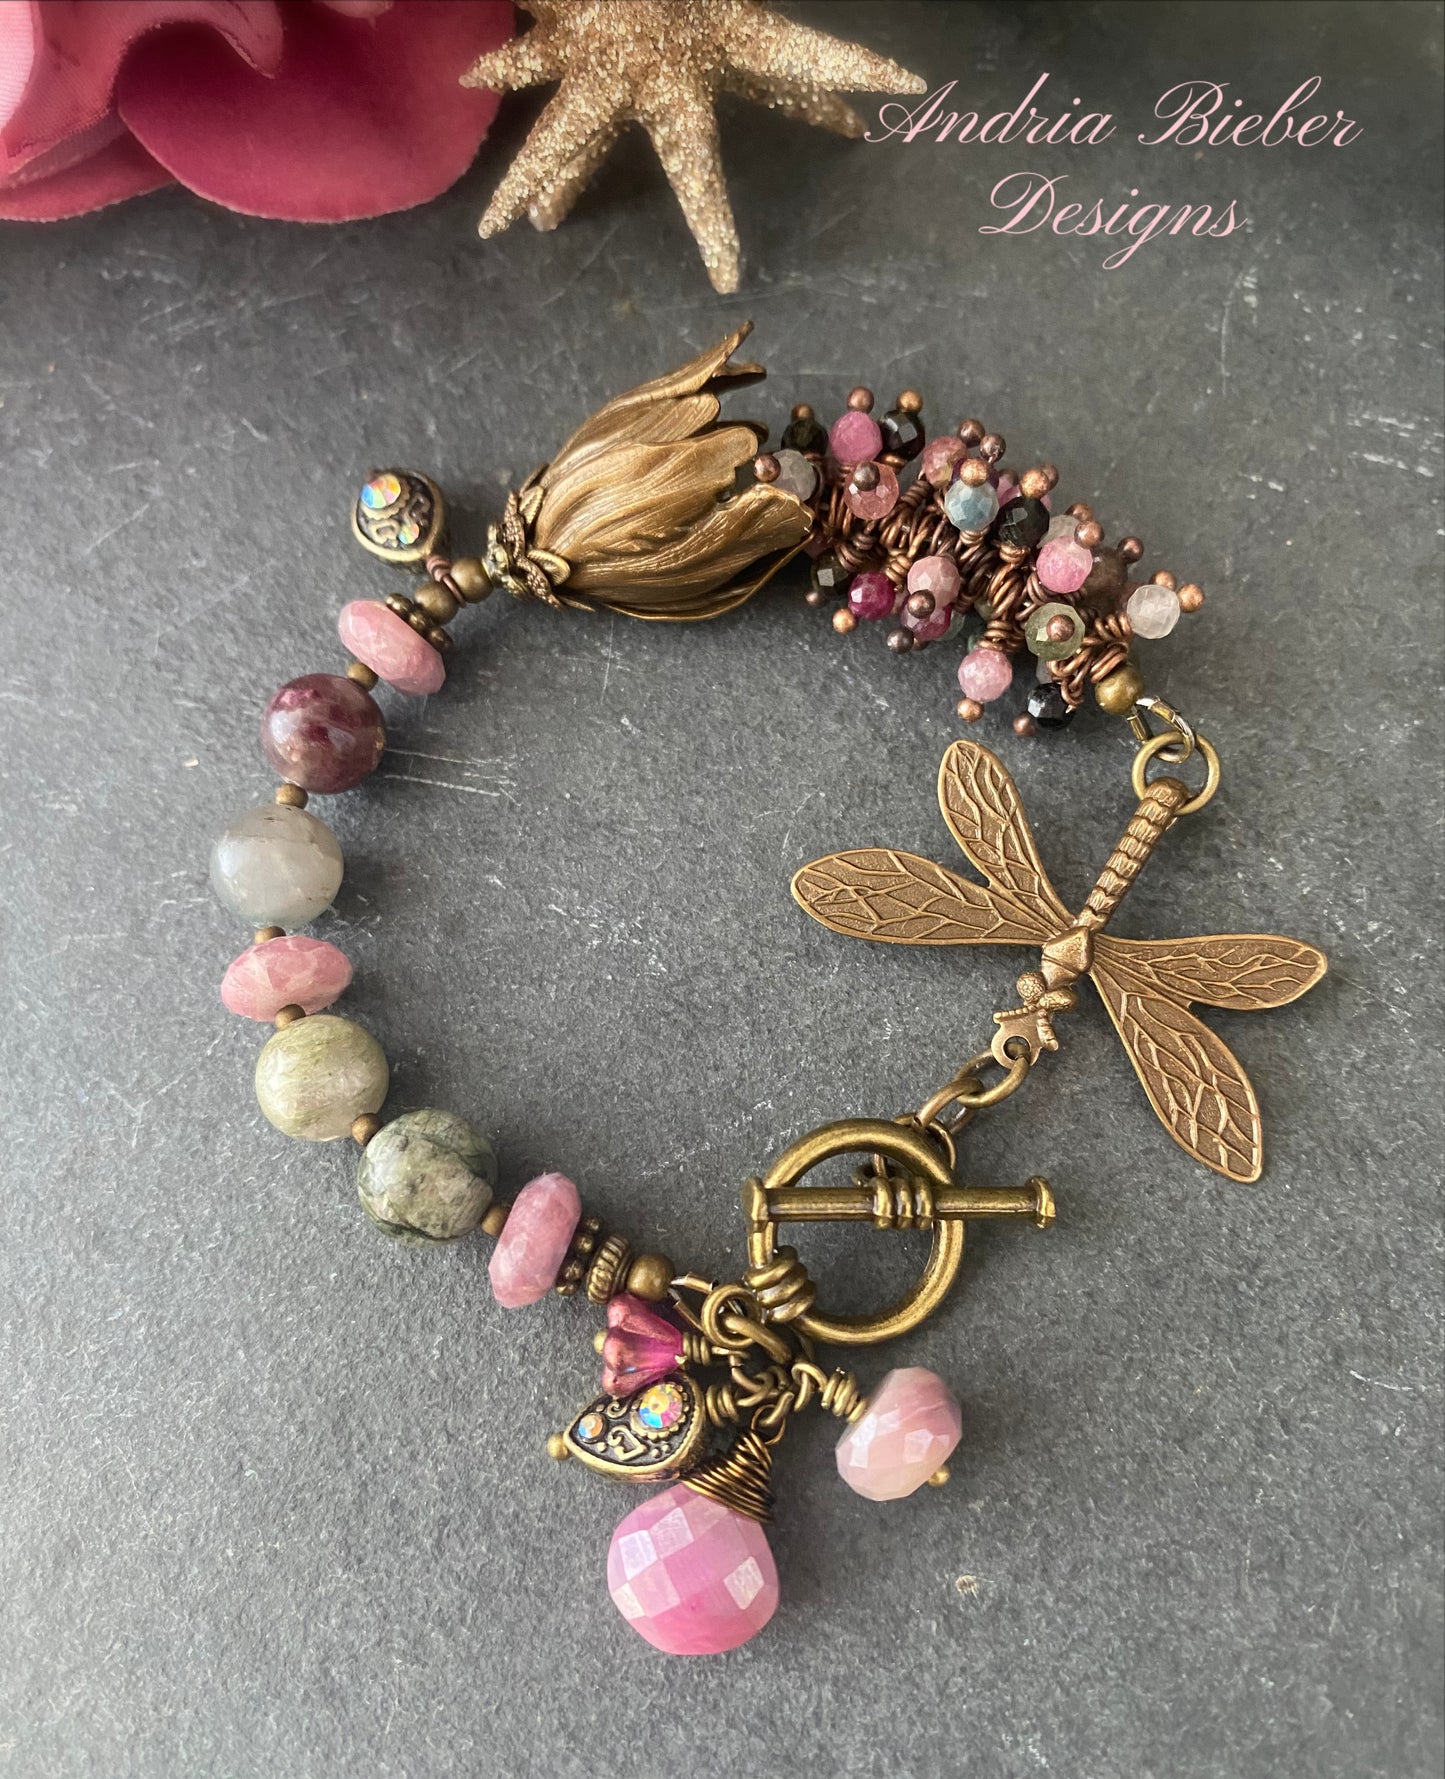 Watermelon tourmaline gemstone, dragonfly, charm bracelet